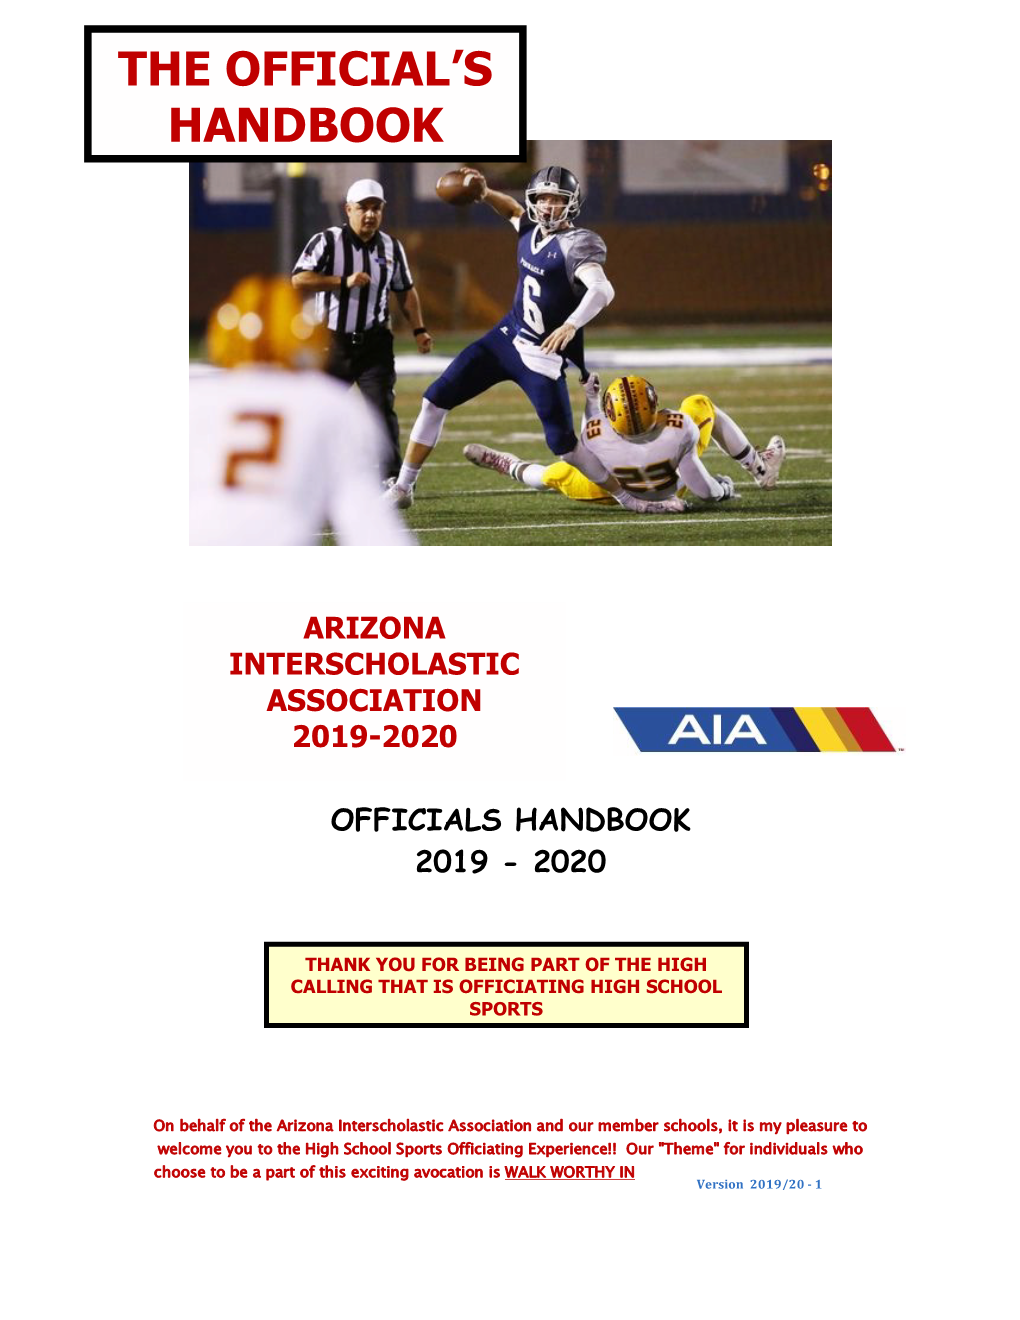 Officials Handbook 2019 - 2020